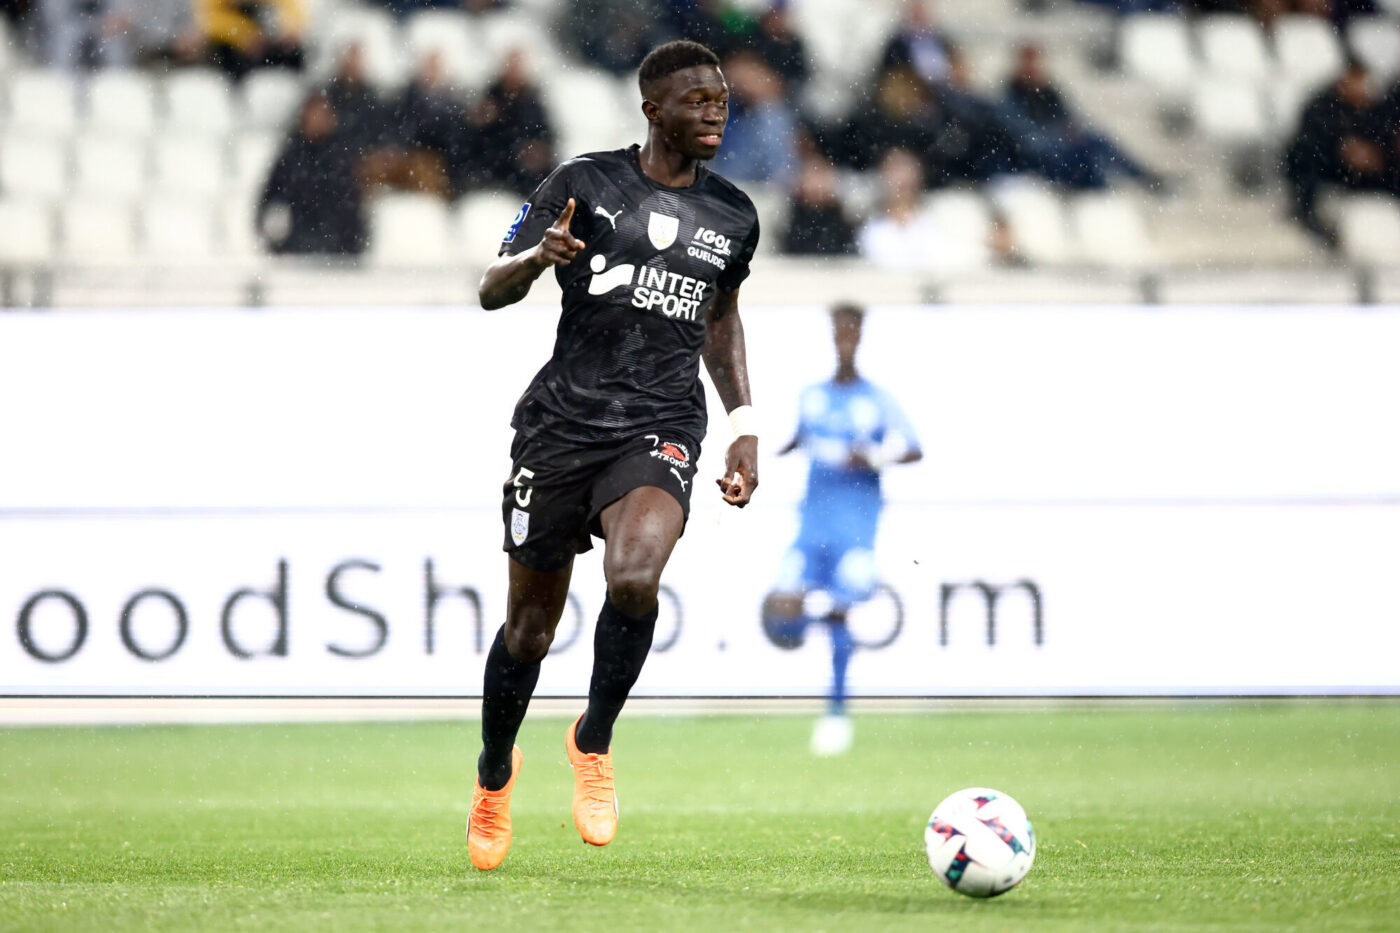 CONTRE UN CHÈQUE DE 7,5 MILLIONS D’EUROS : Formose Mendy quitte Amiens pour le FC Lorient